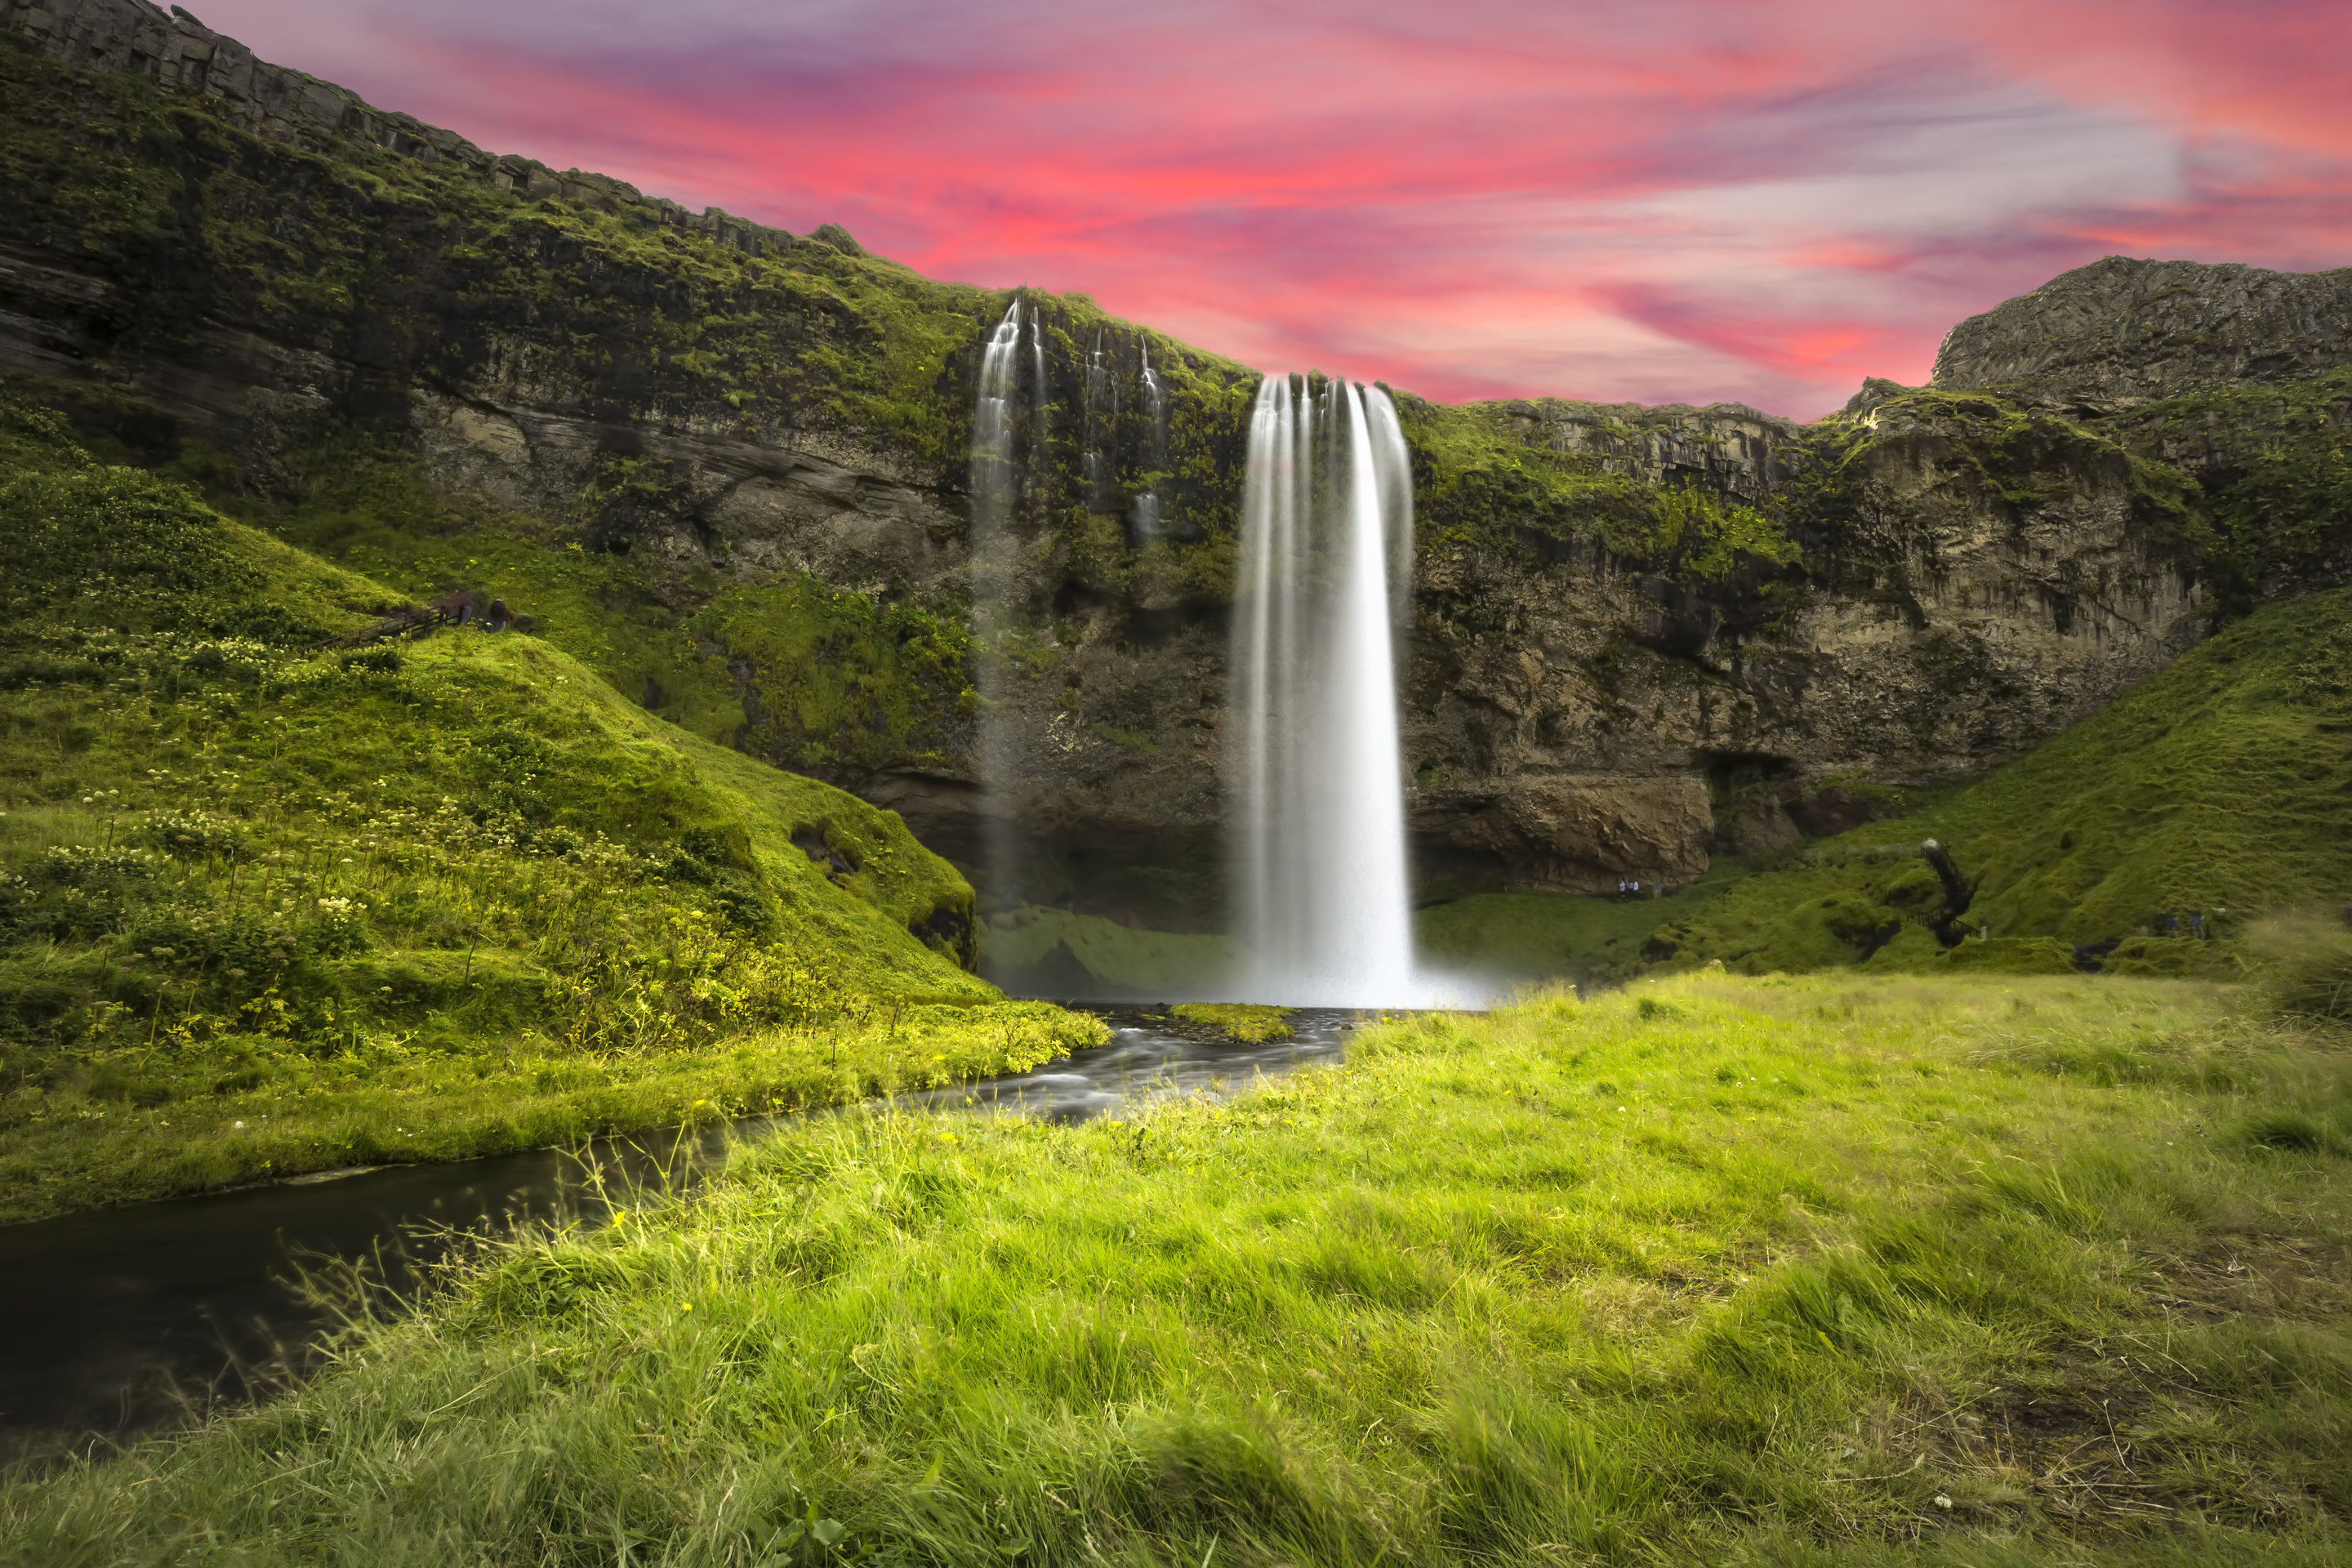 น้ำตกเซลยาแลนศ์ฟอสส์เป็นน้ำตกที่มีชื่อเสียงมากที่สุดแห่งหนึ่งในไอซ์แลนด์